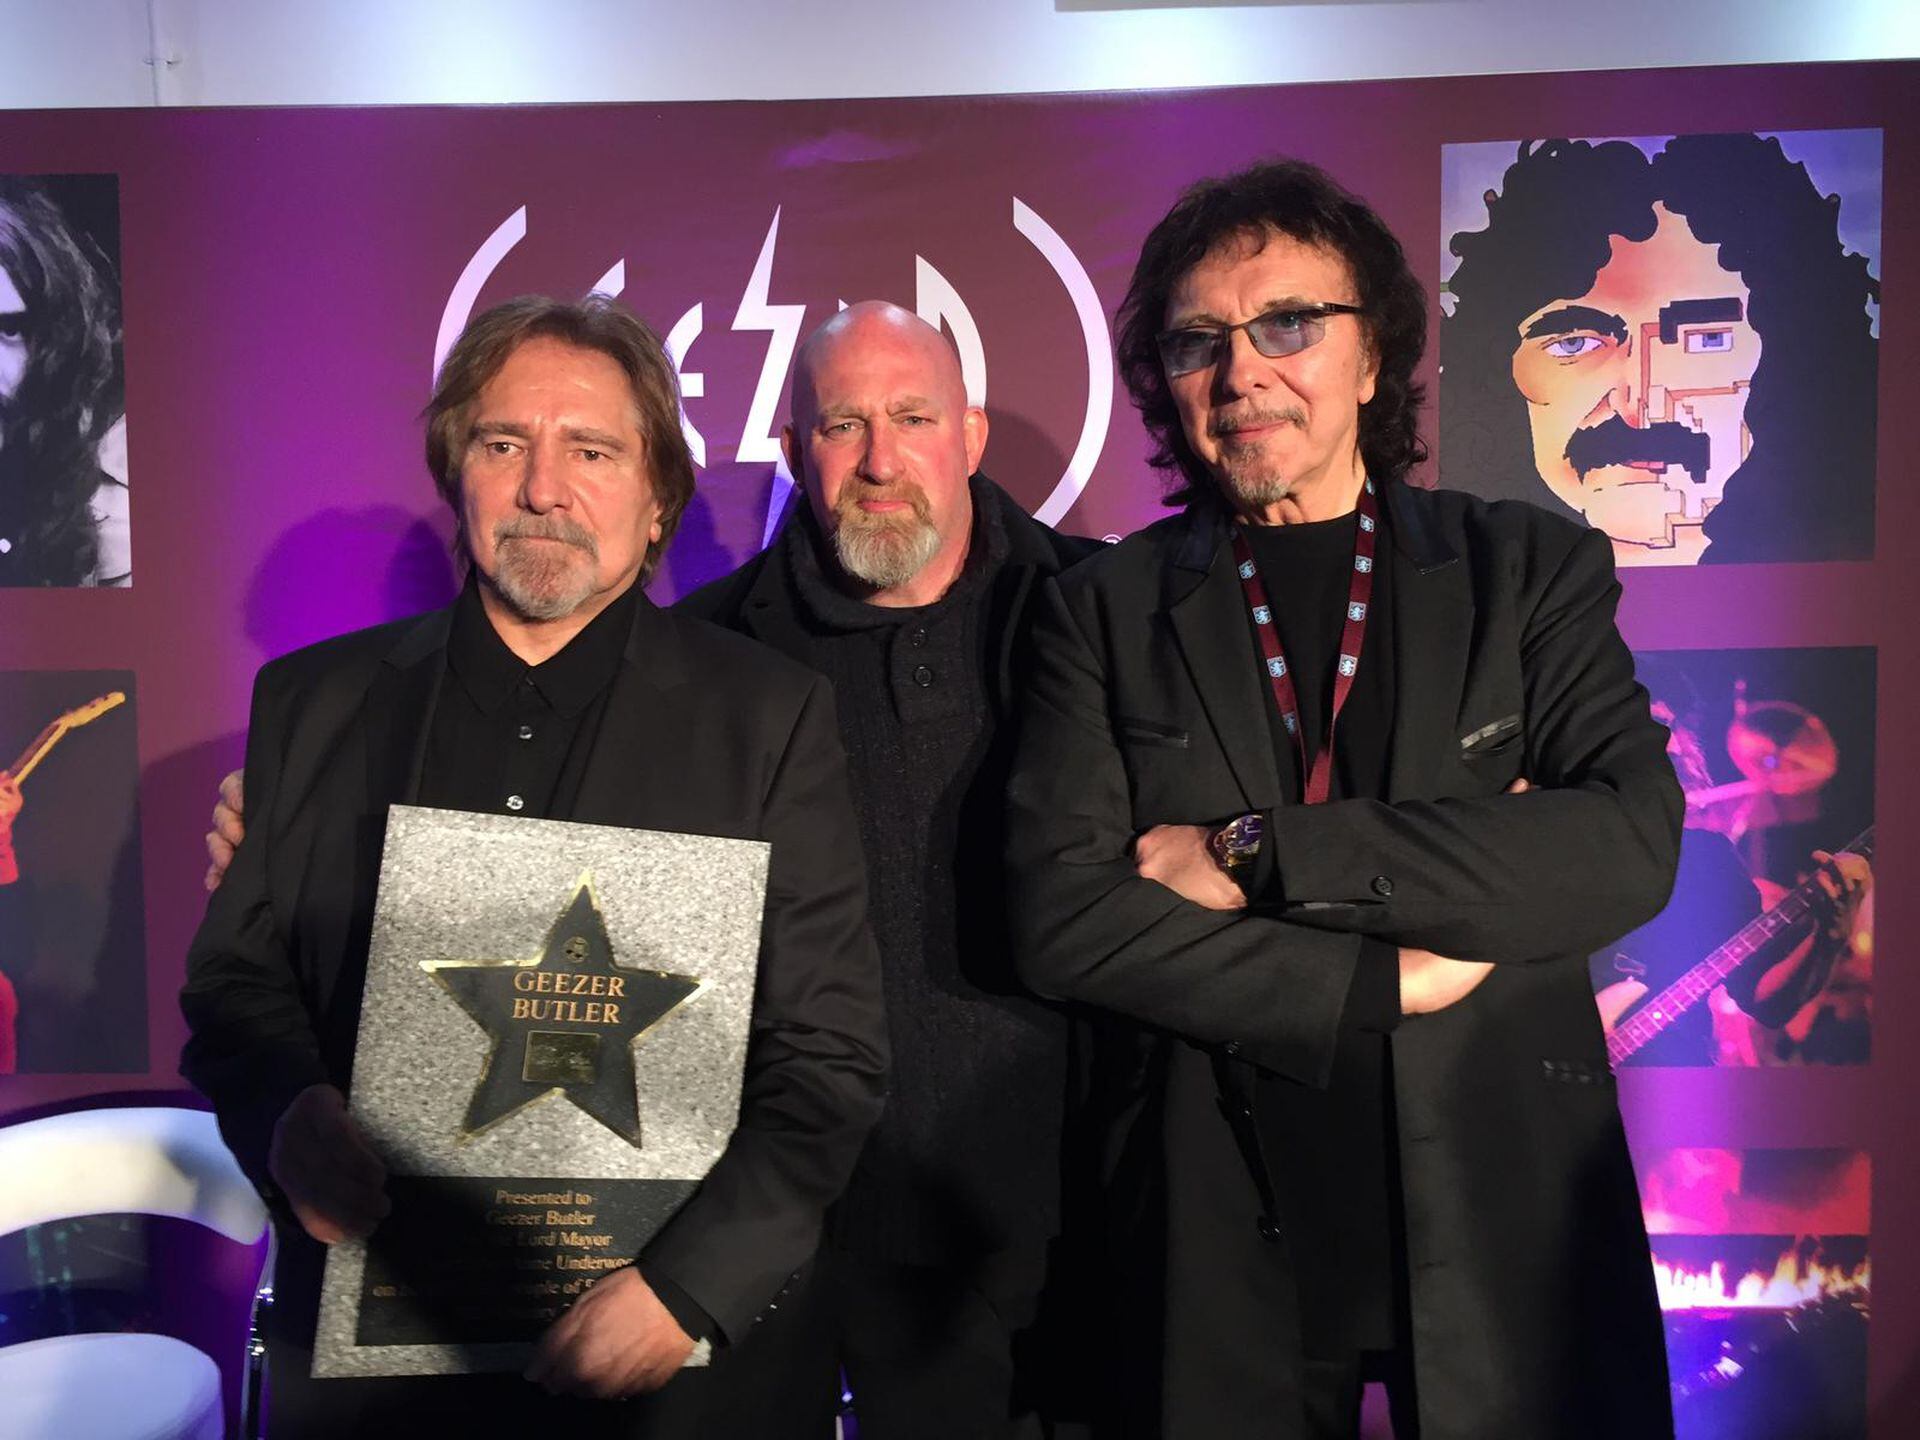 Christian Martin, como fanático de la música heavy metal, no dejó pasar la oportunidad de fotografiarse junto a Geezer Butler y Tony Iommi, bajista y guitarrista de Black Sabbath